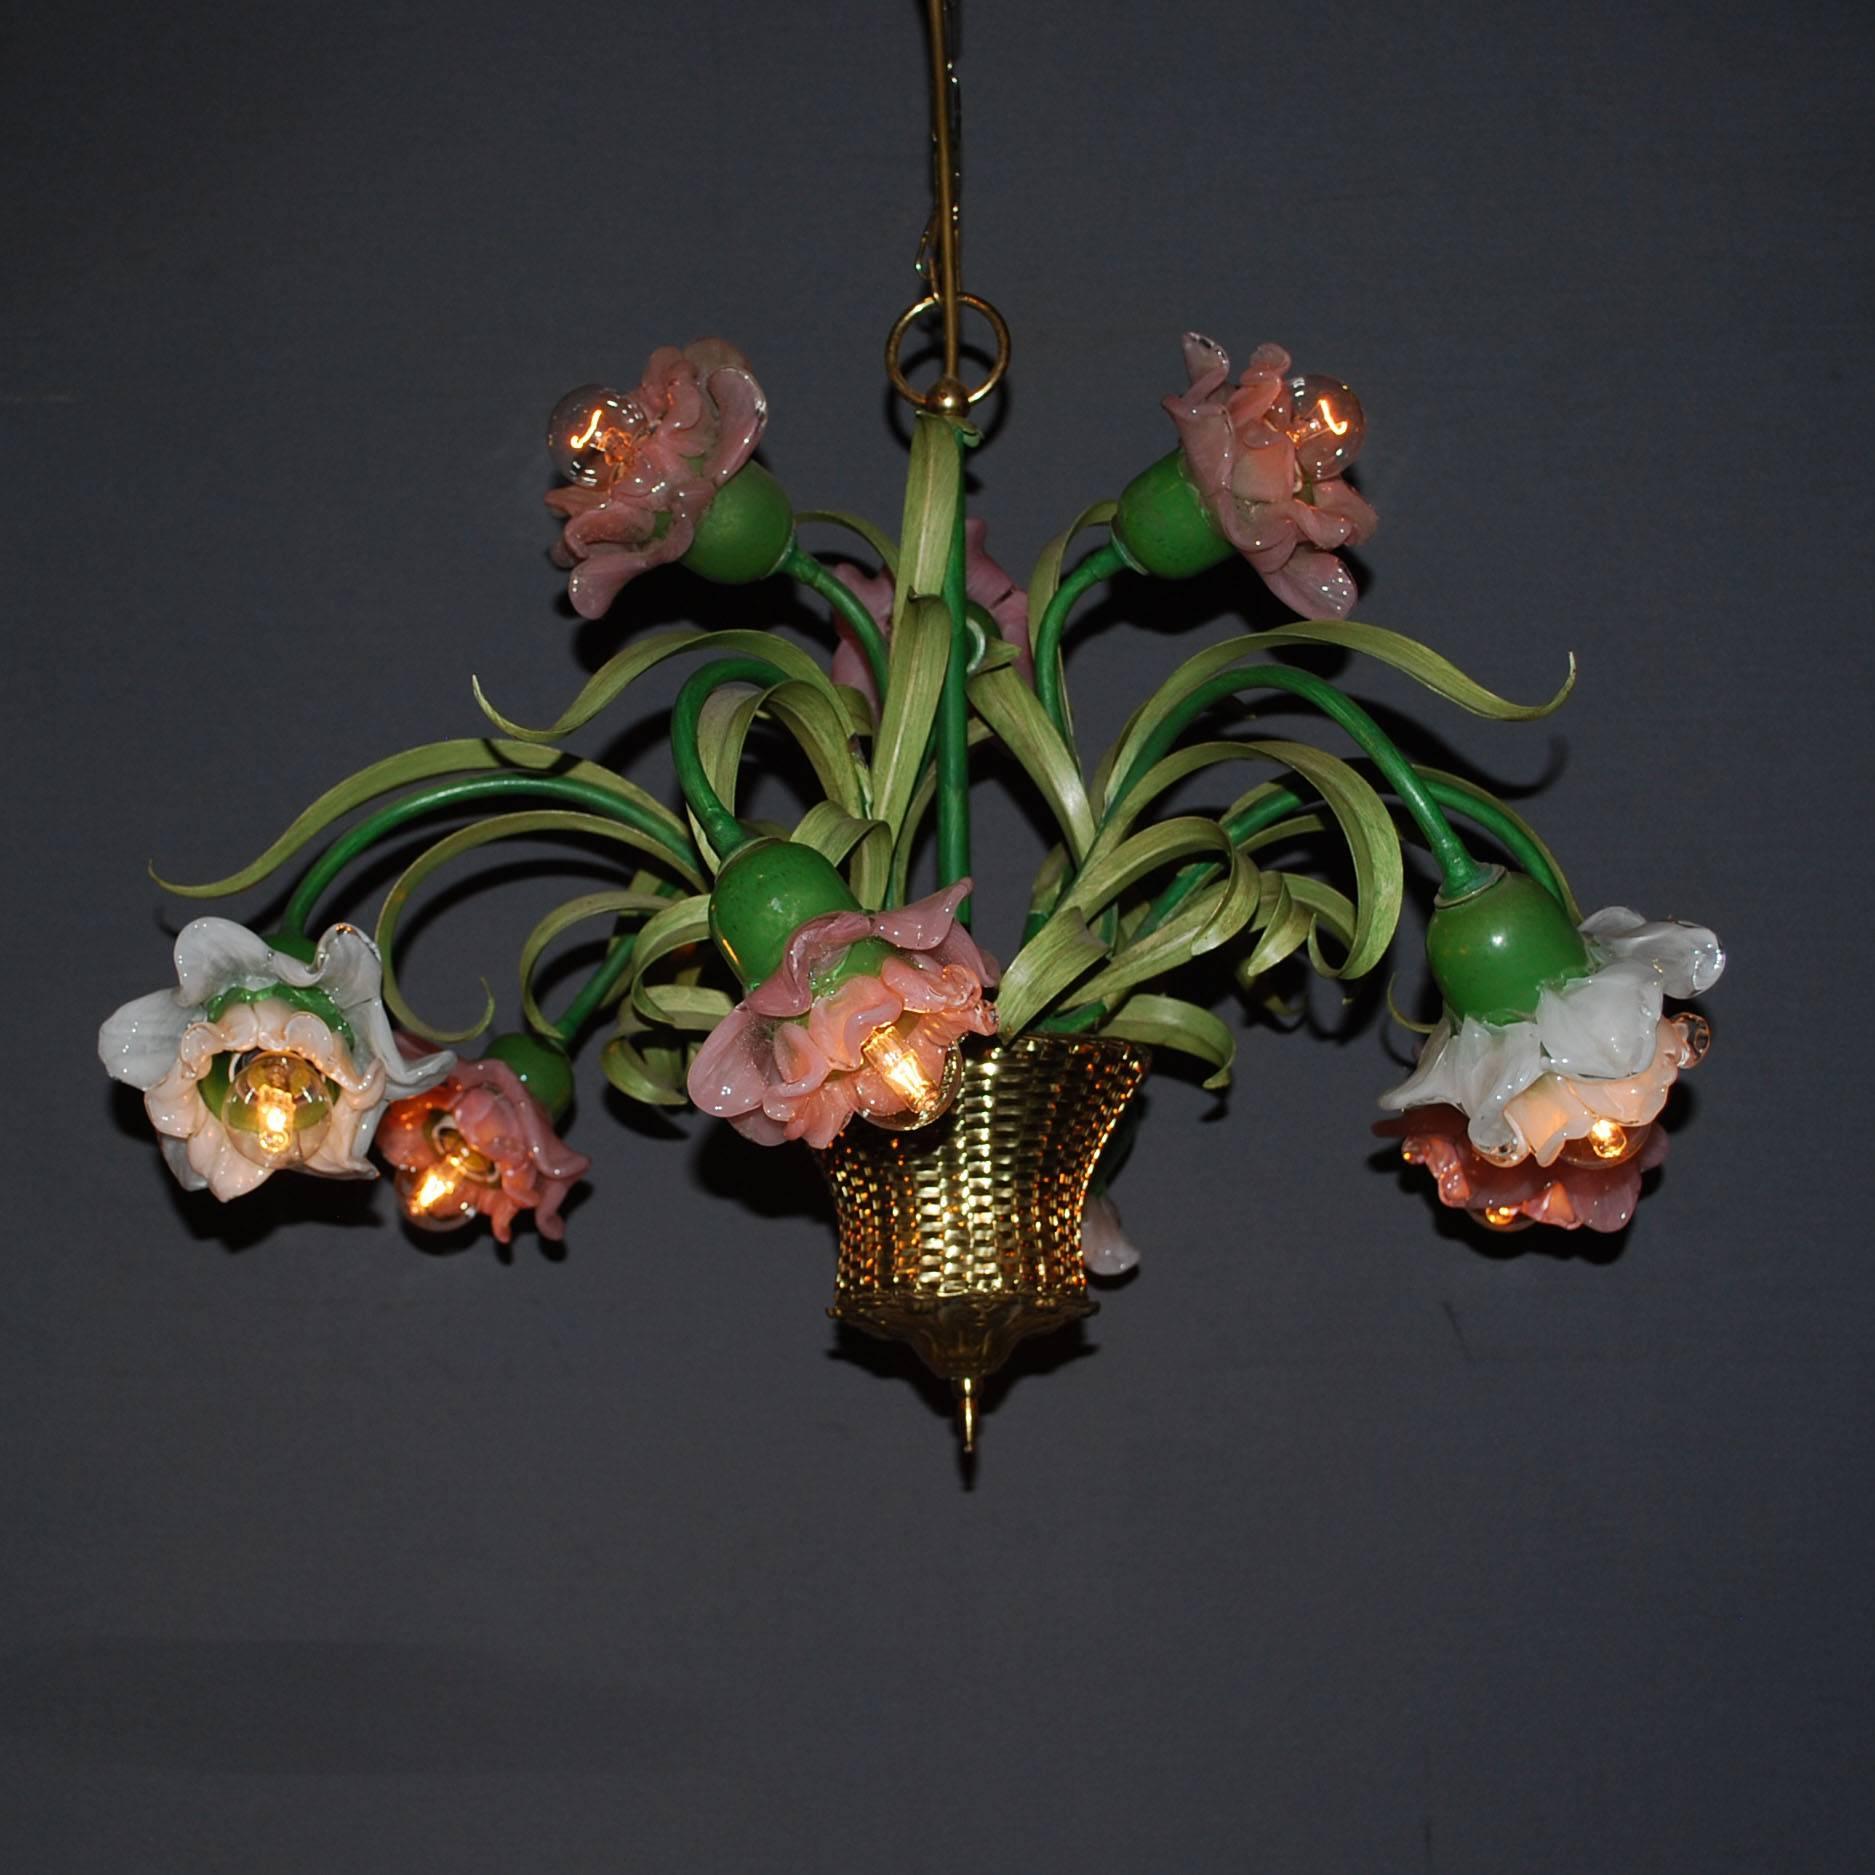 lustre du 20e siècle représentant des fleurs dans un panier.
Les fleurs sont en verre peint à la main, le panier est en cuivre.
Neuf lumières.
Originaire de France, datant d'environ 1960.
